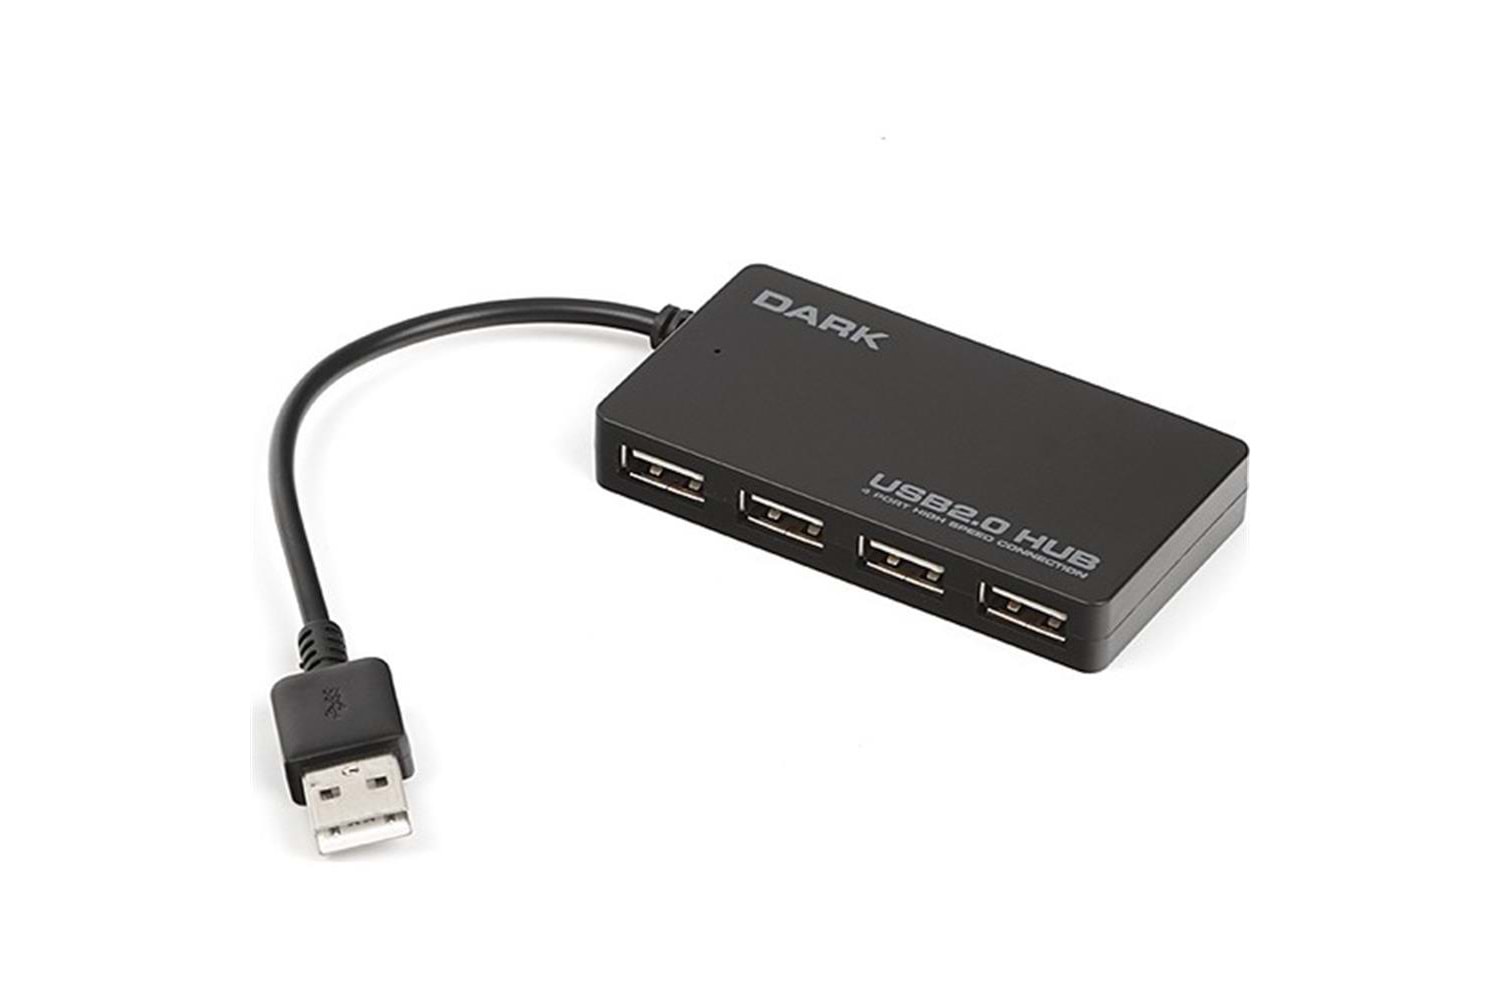 DARK DK-AC-USB242 2.0 USB 4 PORT HUB ÇOKLAYICI